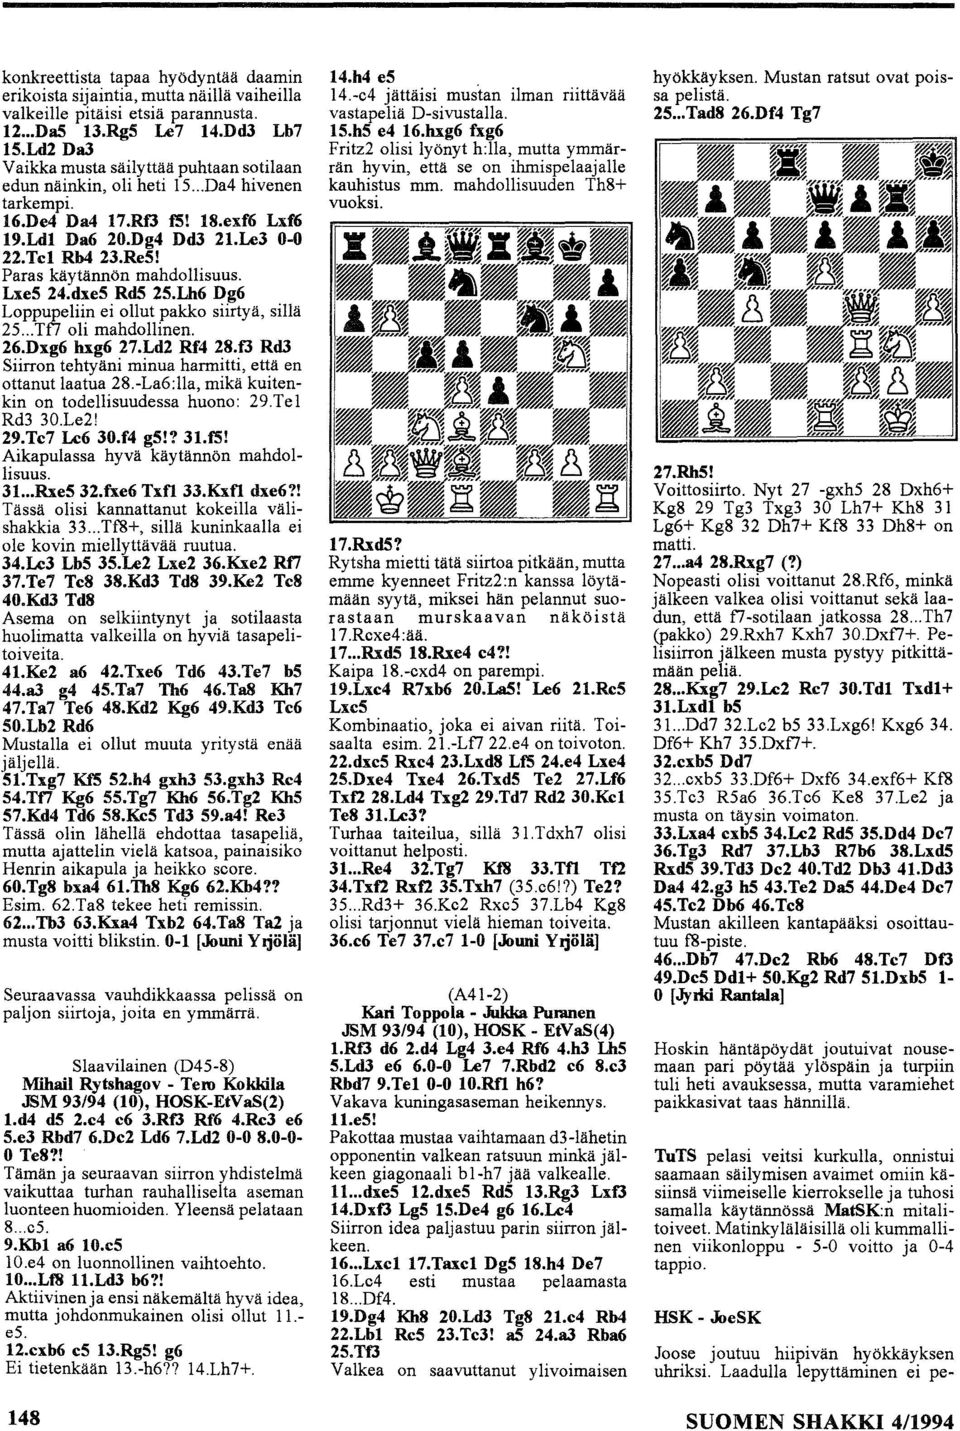 Paras käytännön mahdllisuus. Lxe5 24.dxe5 RdS 25.Lh6 Dg6 Lppupeliin ei llut pakk siirtyä, sillä 25... Tfl li mahdllinen. 26.Dxg6 hxg6 27.Ld2 Rf4 28.